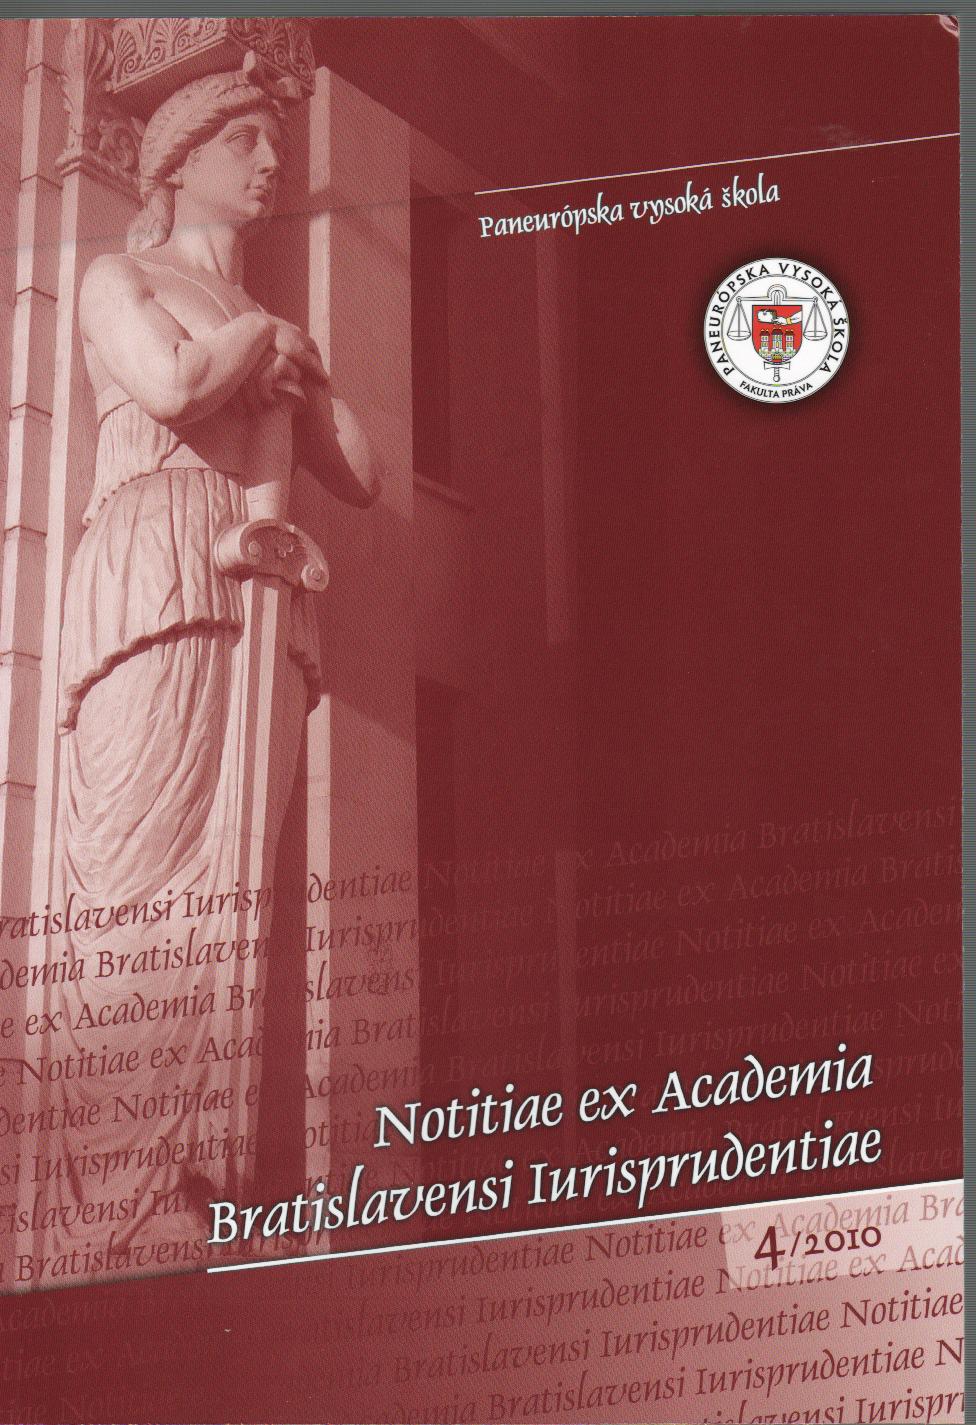 4/2010 Notitiea ex Academia Bratislavensi Iurisprudentiae